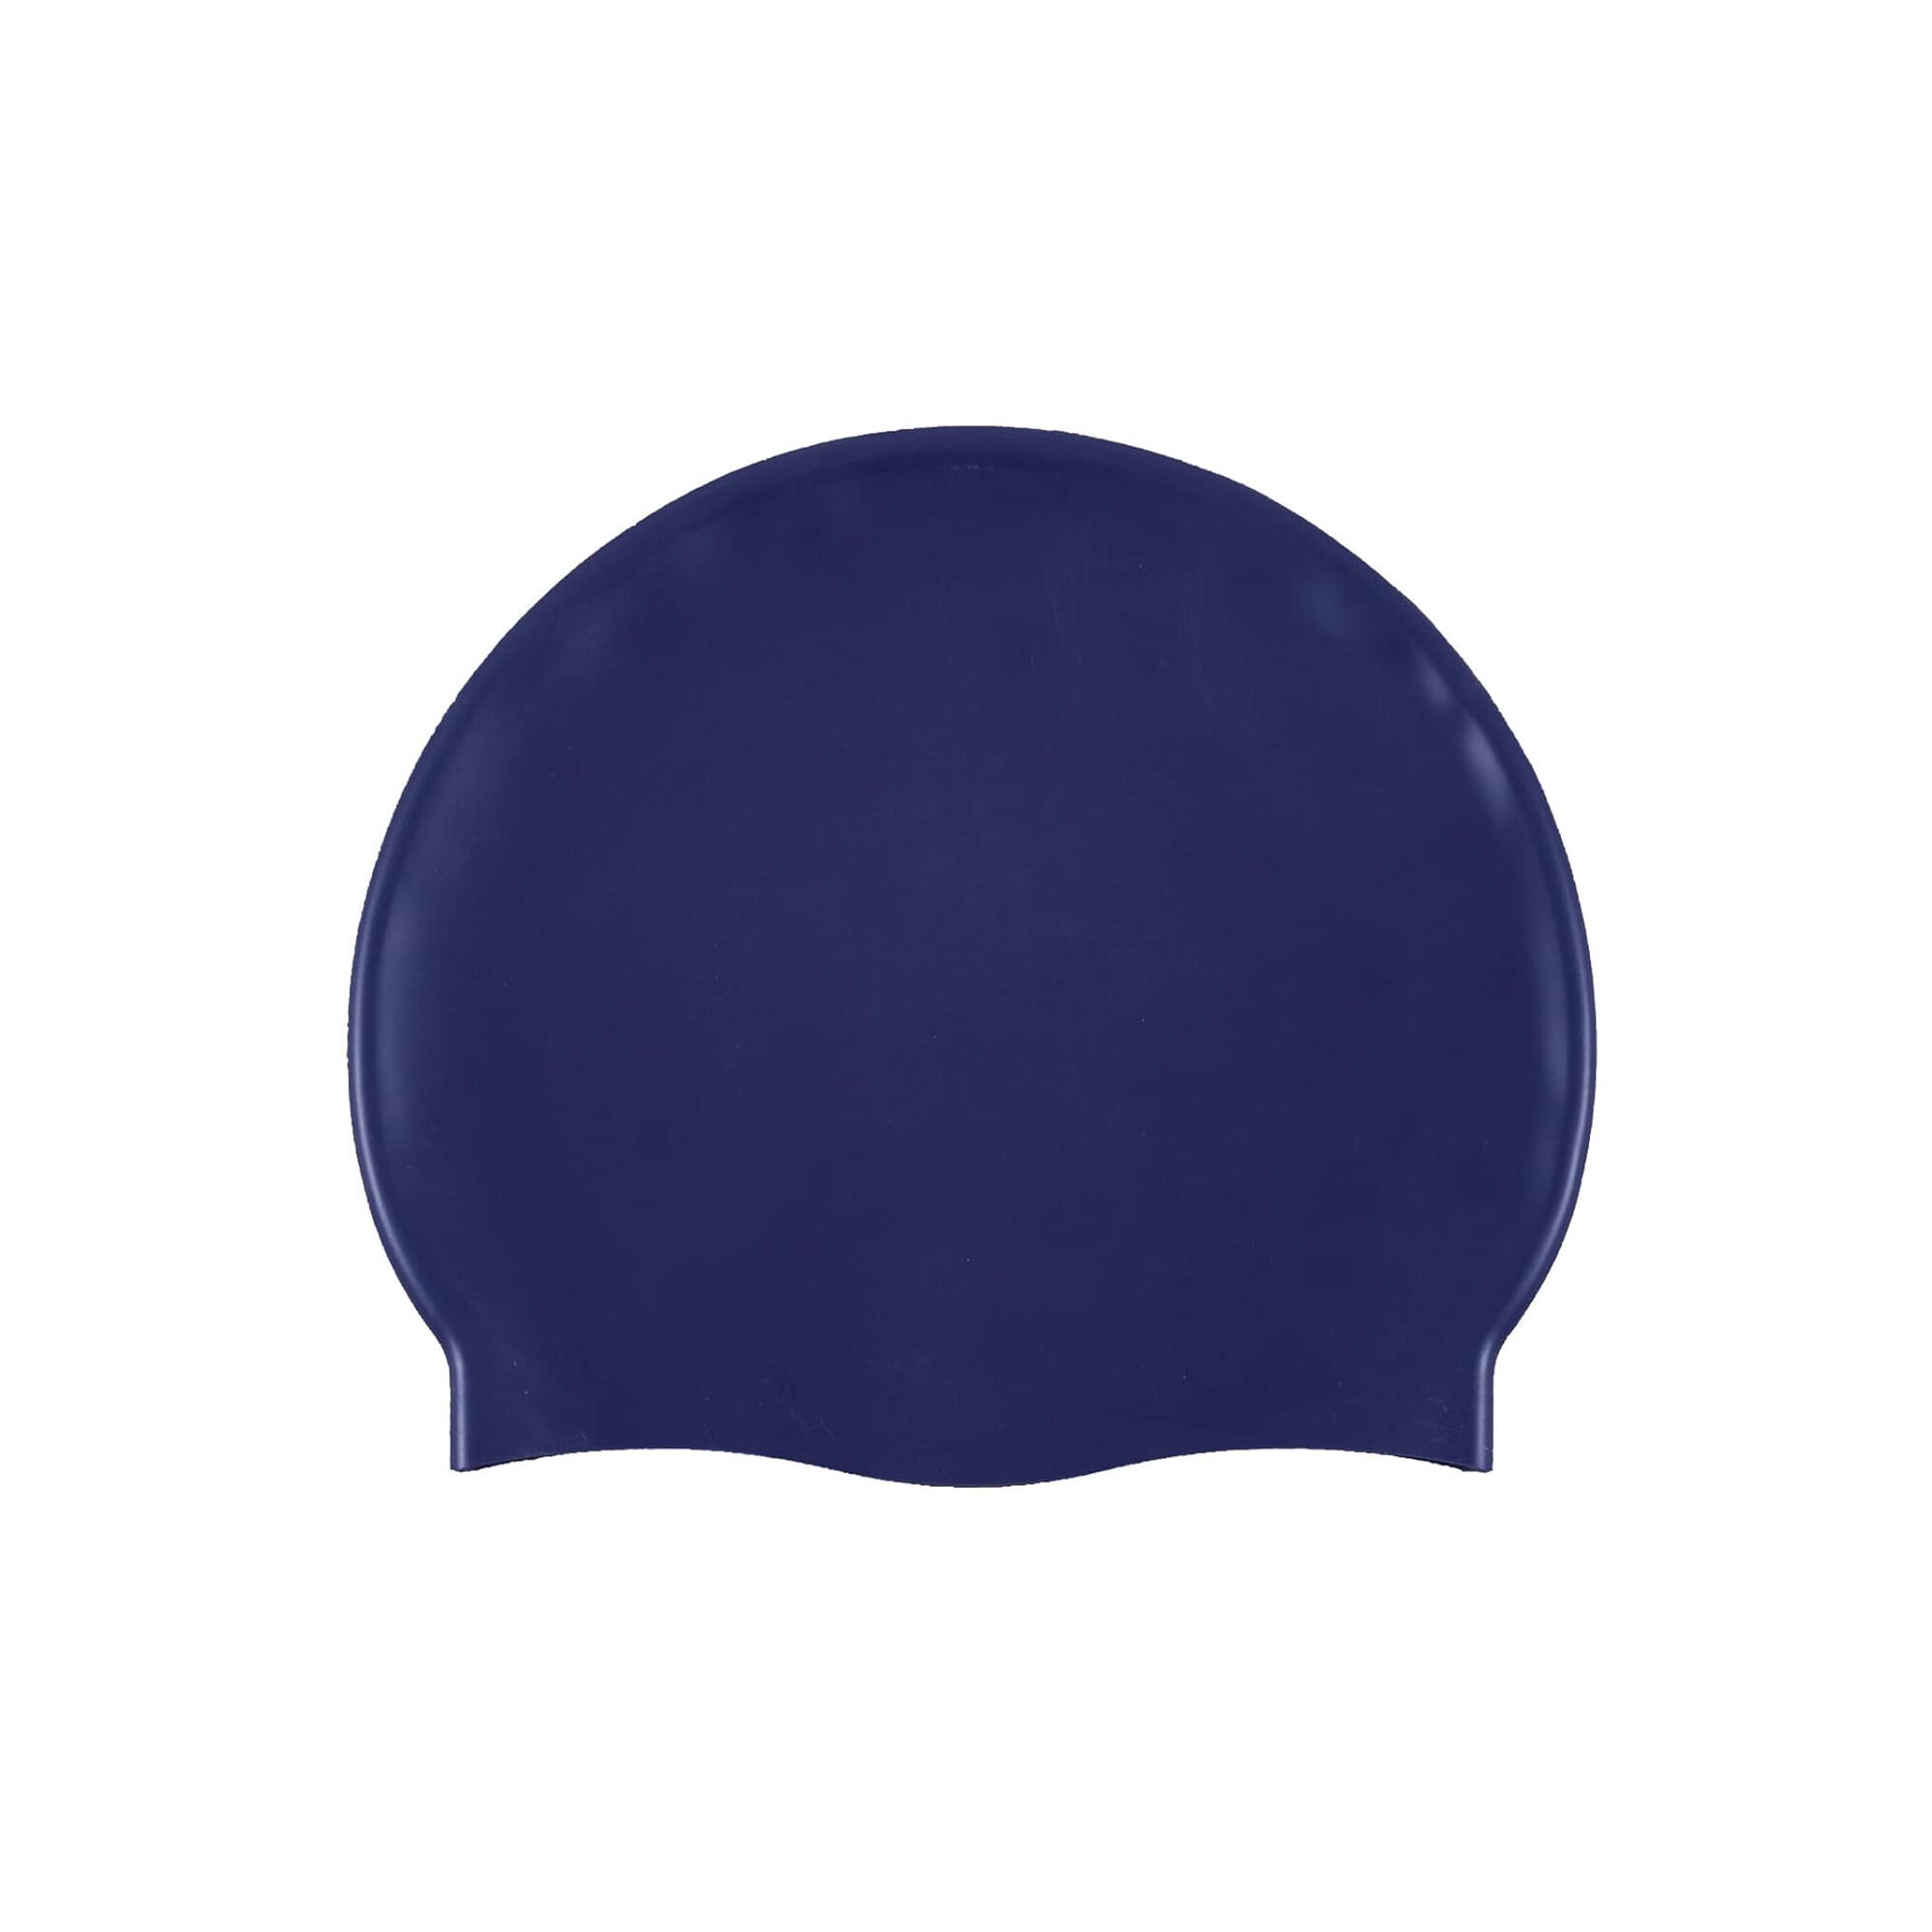 ARENA Unisex Adult Classic Silicone Swim Cap (Denim/Silver)